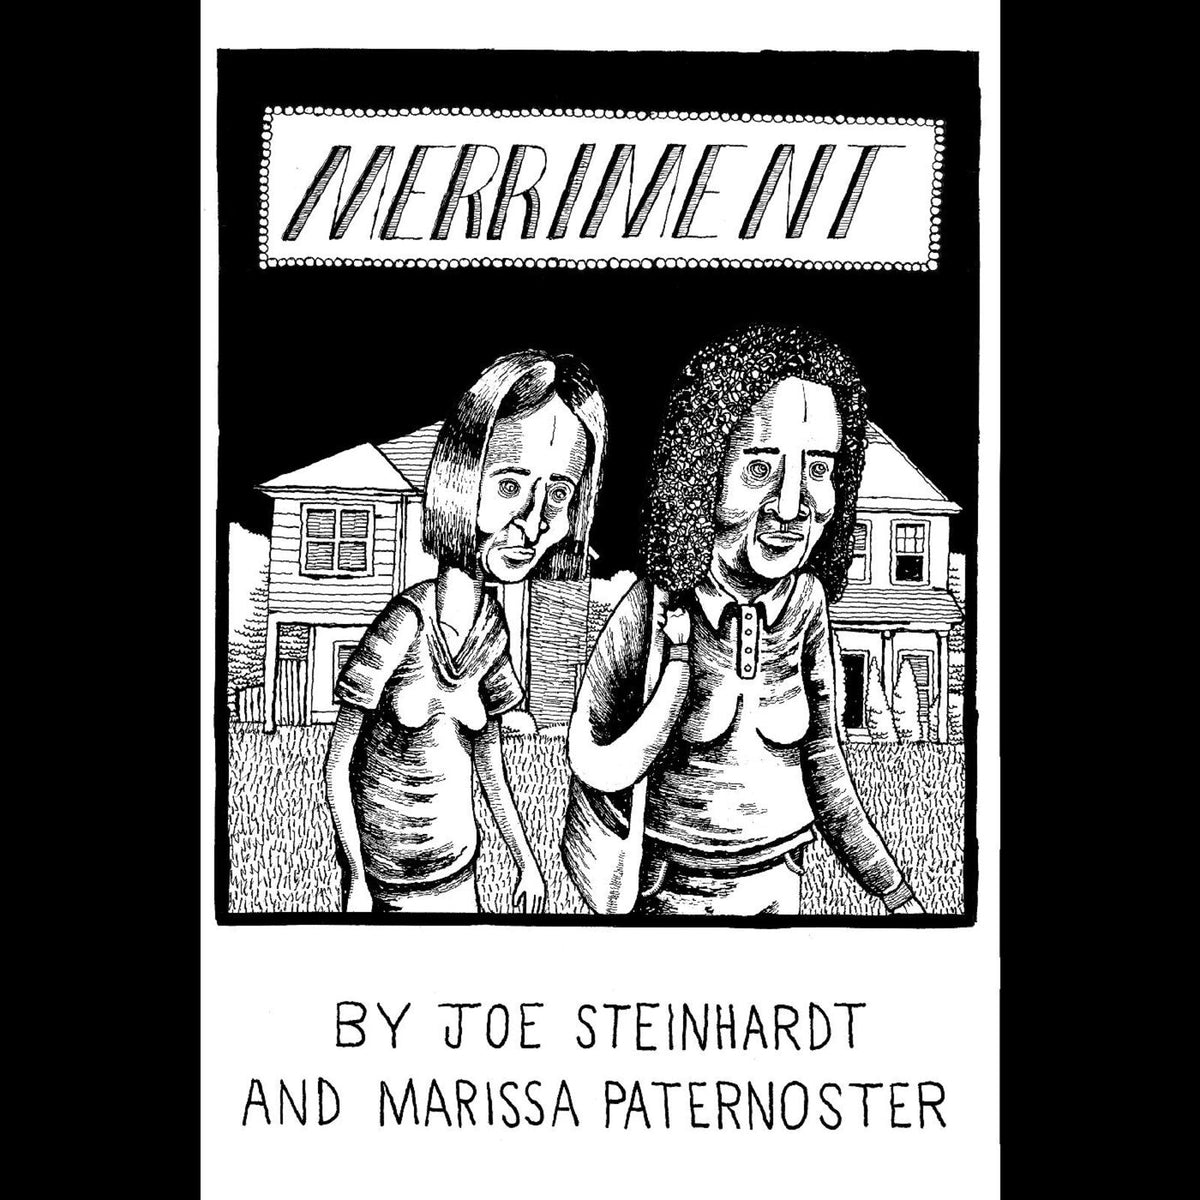 Joe & Marissa Paternoster Steinhardt - Merriment - BKDG300X